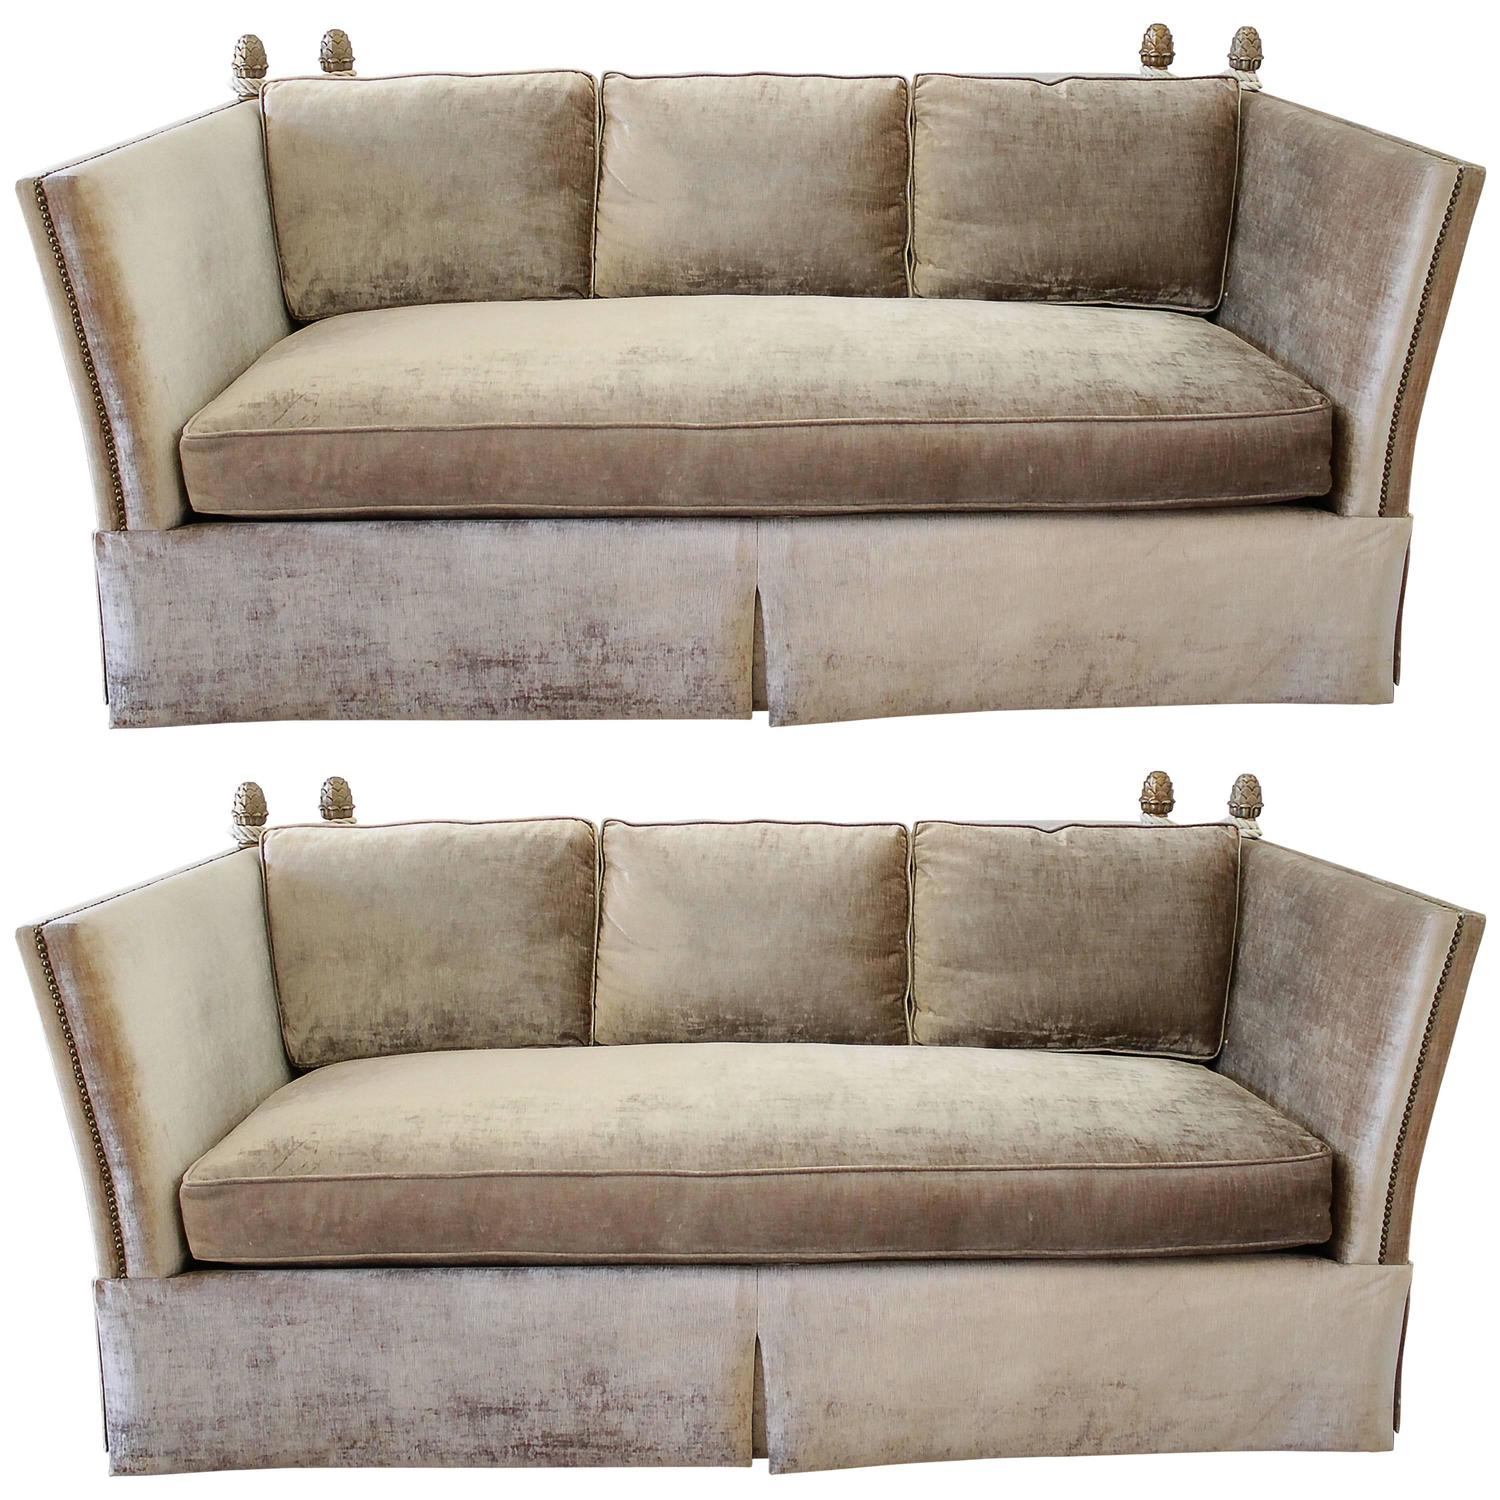 Knoll Style Sofas With Acorn Finials, Knoll Style Sofa Velvet